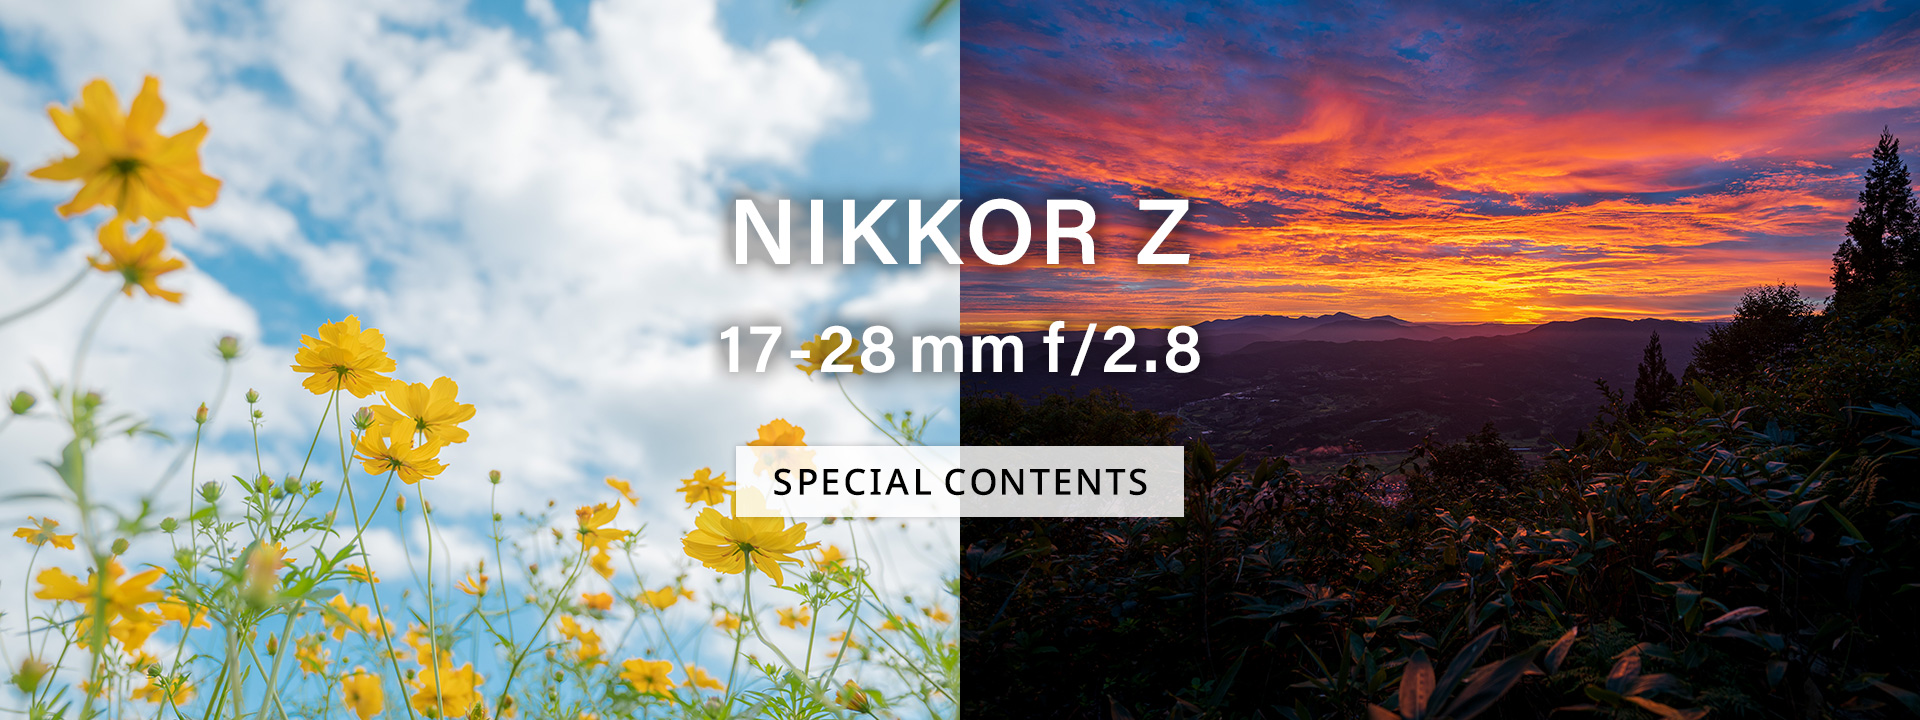 NIKKOR Z 17-28mm f/2.8 スペシャルコンテンツ